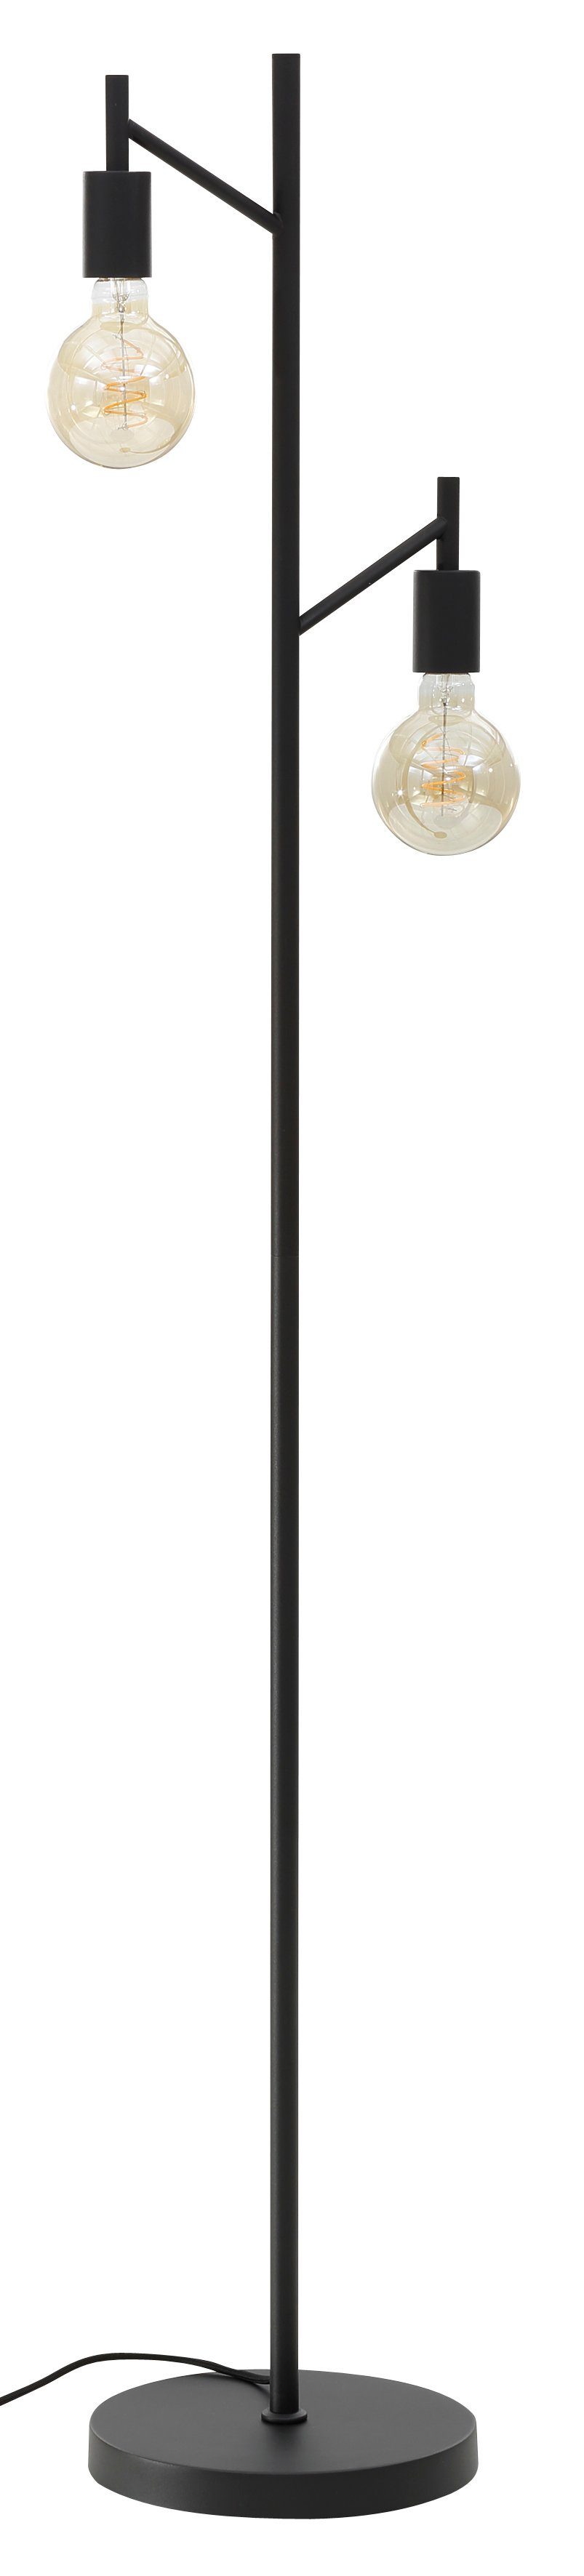 Leonique Stehlampe Jarla, ohne Leuchtmittel, moderne, klassisch schwarze Stehleuchte, Höhe 155 cm | Standleuchten